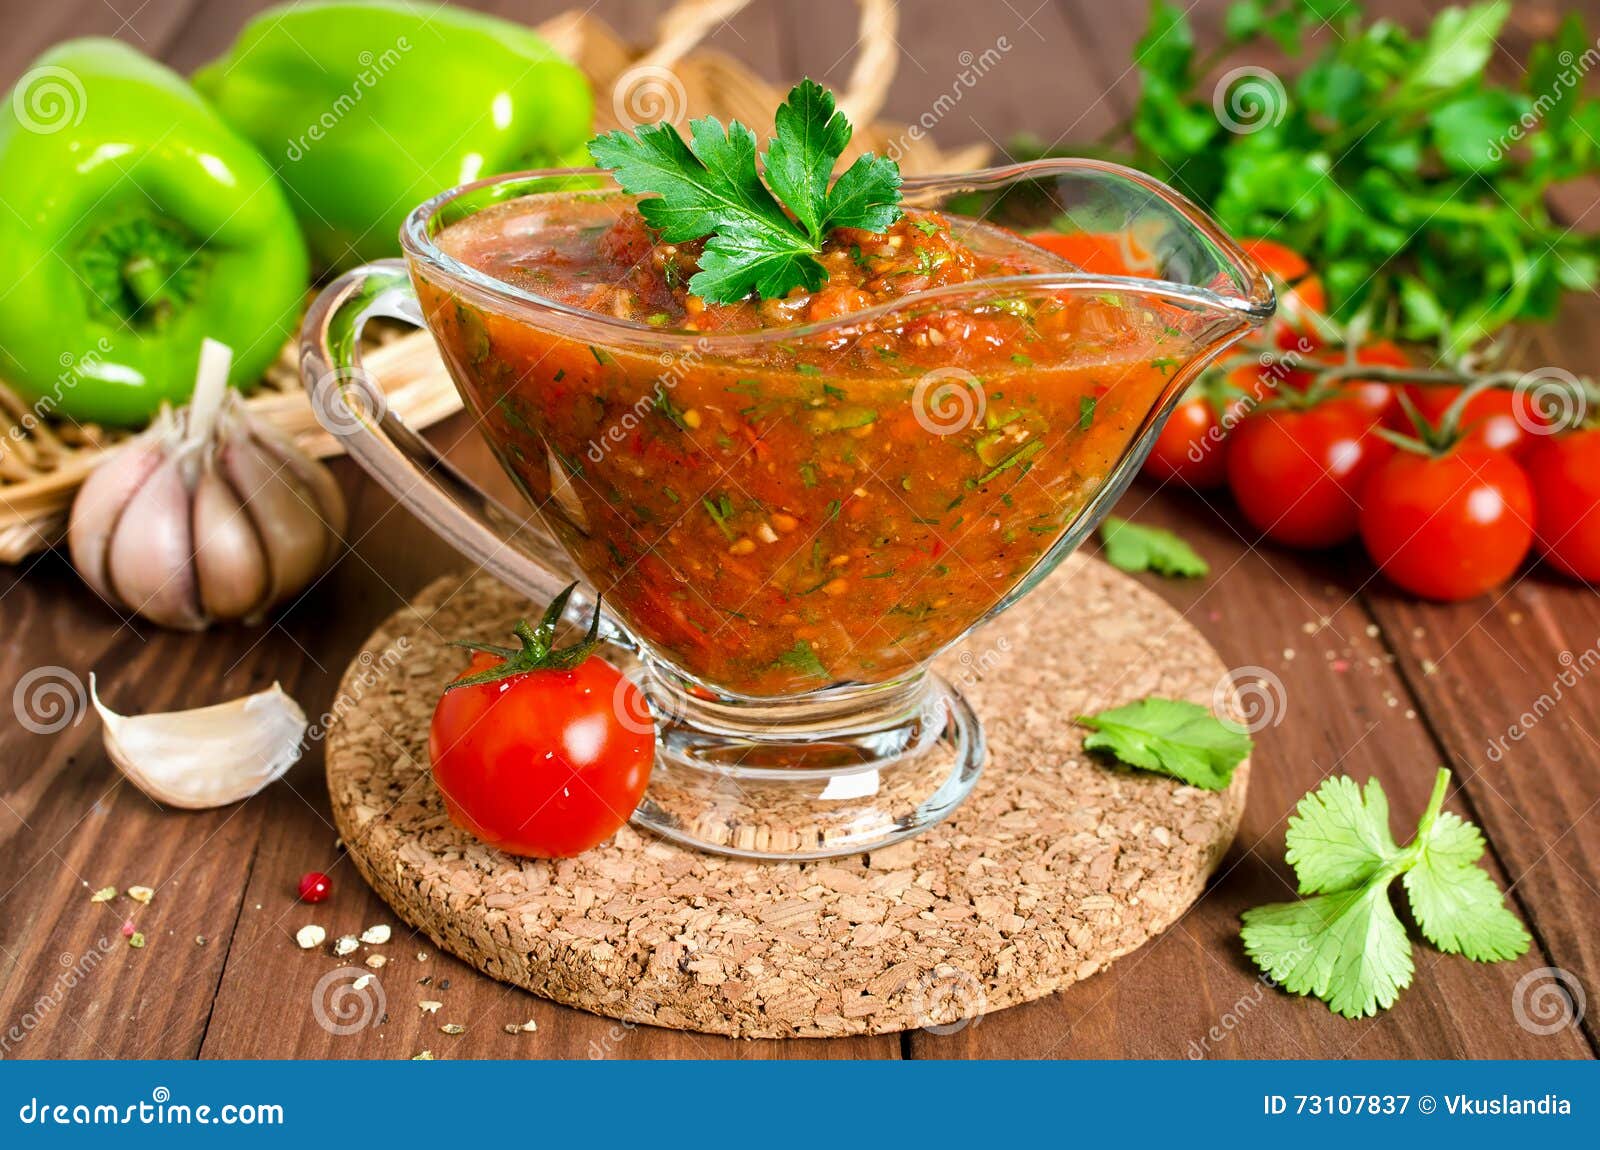 томатный соус из помидор для пиццы на зиму фото 109